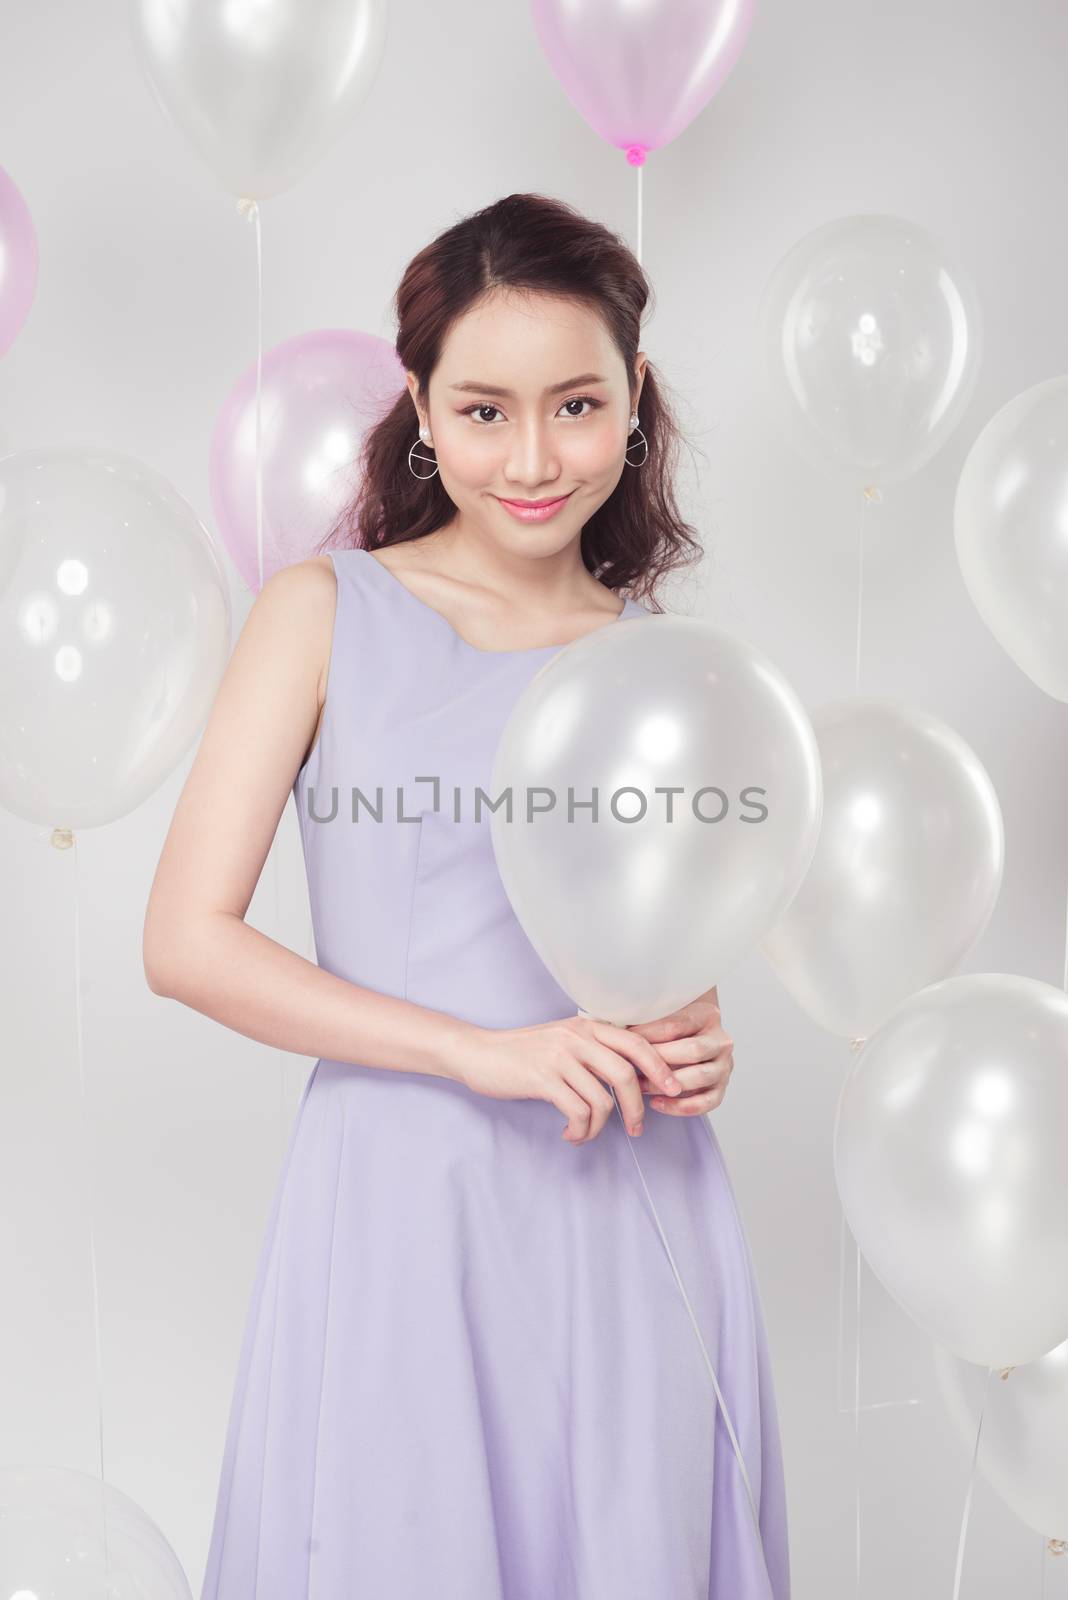 Stylish beautiful asian woman with pastel balloons